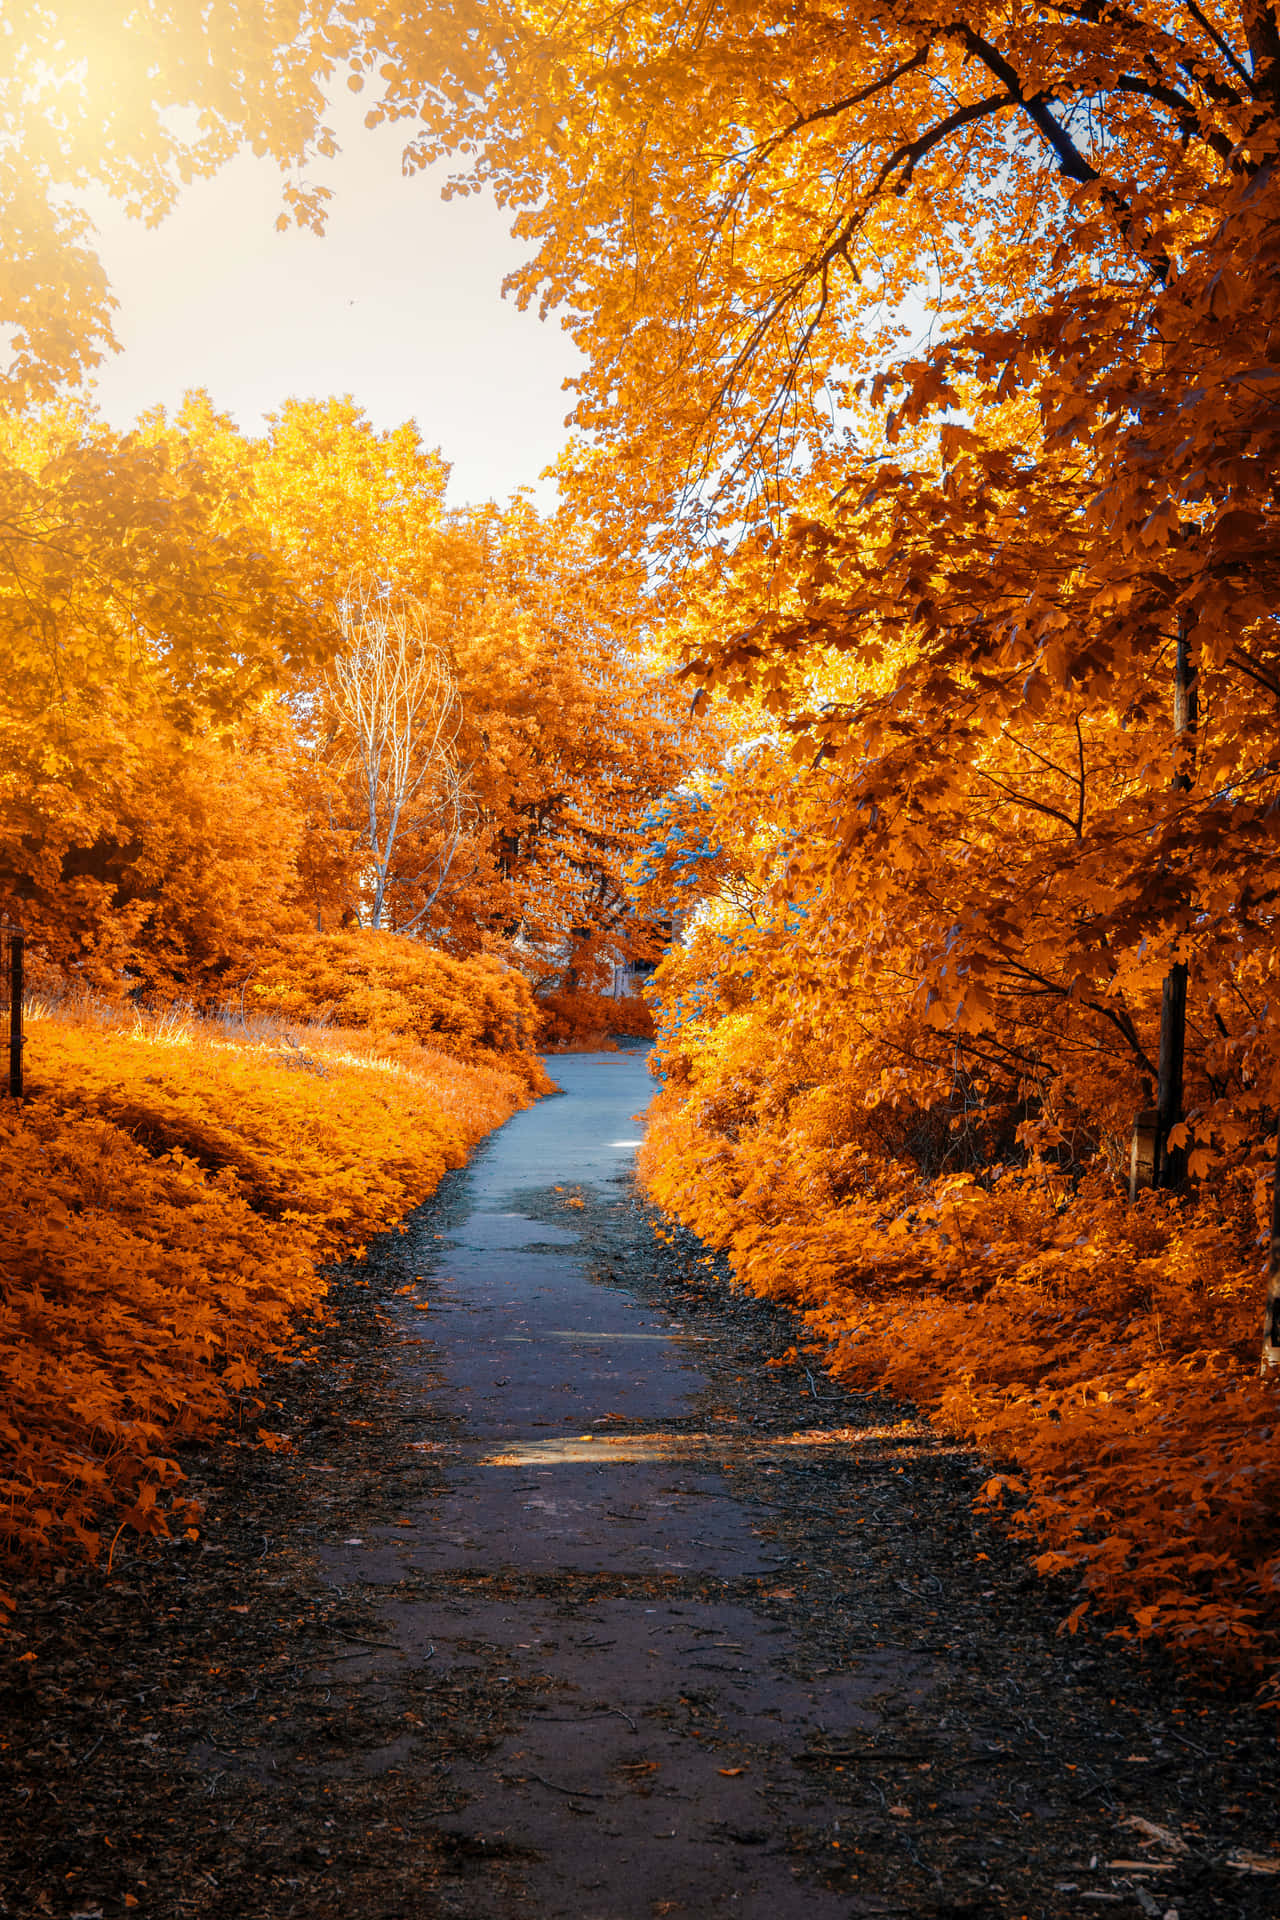 Dieschönheit Eines Malerischen Herbstes, Mit Bäumen, Die In Leuchtenden Gelb-, Orange- Und Rottönen Geschmückt Sind.